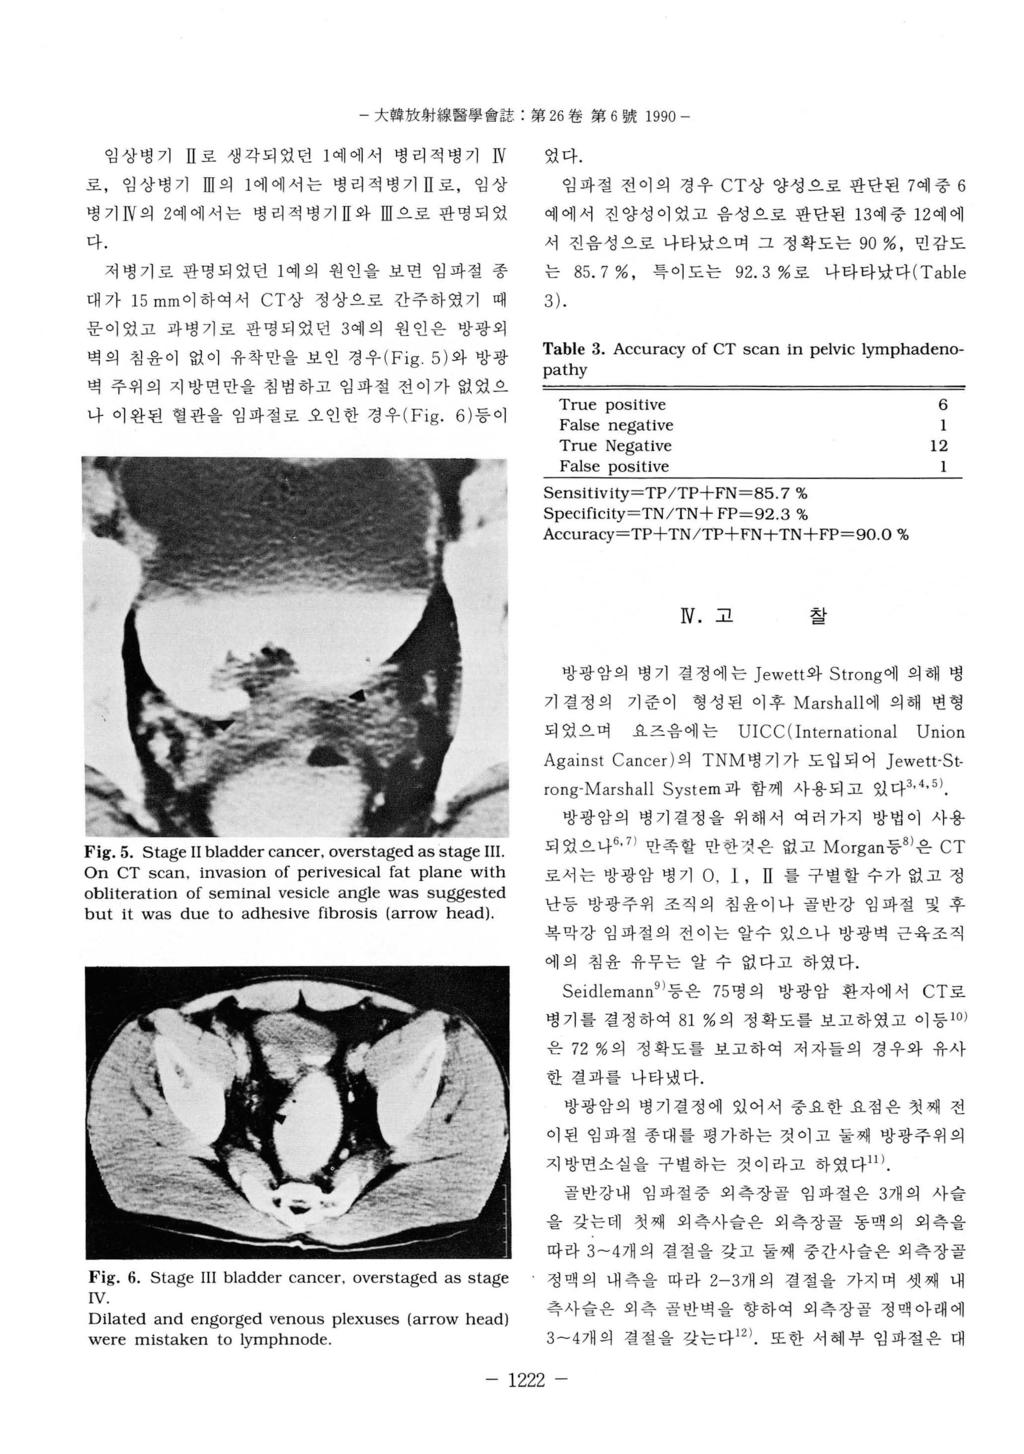 大韓放射線醫學會誌 : 第 26 卷第 6 號 1990 - 임상병기 n 로생각되었던 1 예에서병리적병기 W 로, 임상병기 m 의 1 에에서는병리적병기 H 로, 임상병기 N 의 2예에서는병리적병기 H 와 m 으로판명되었다.